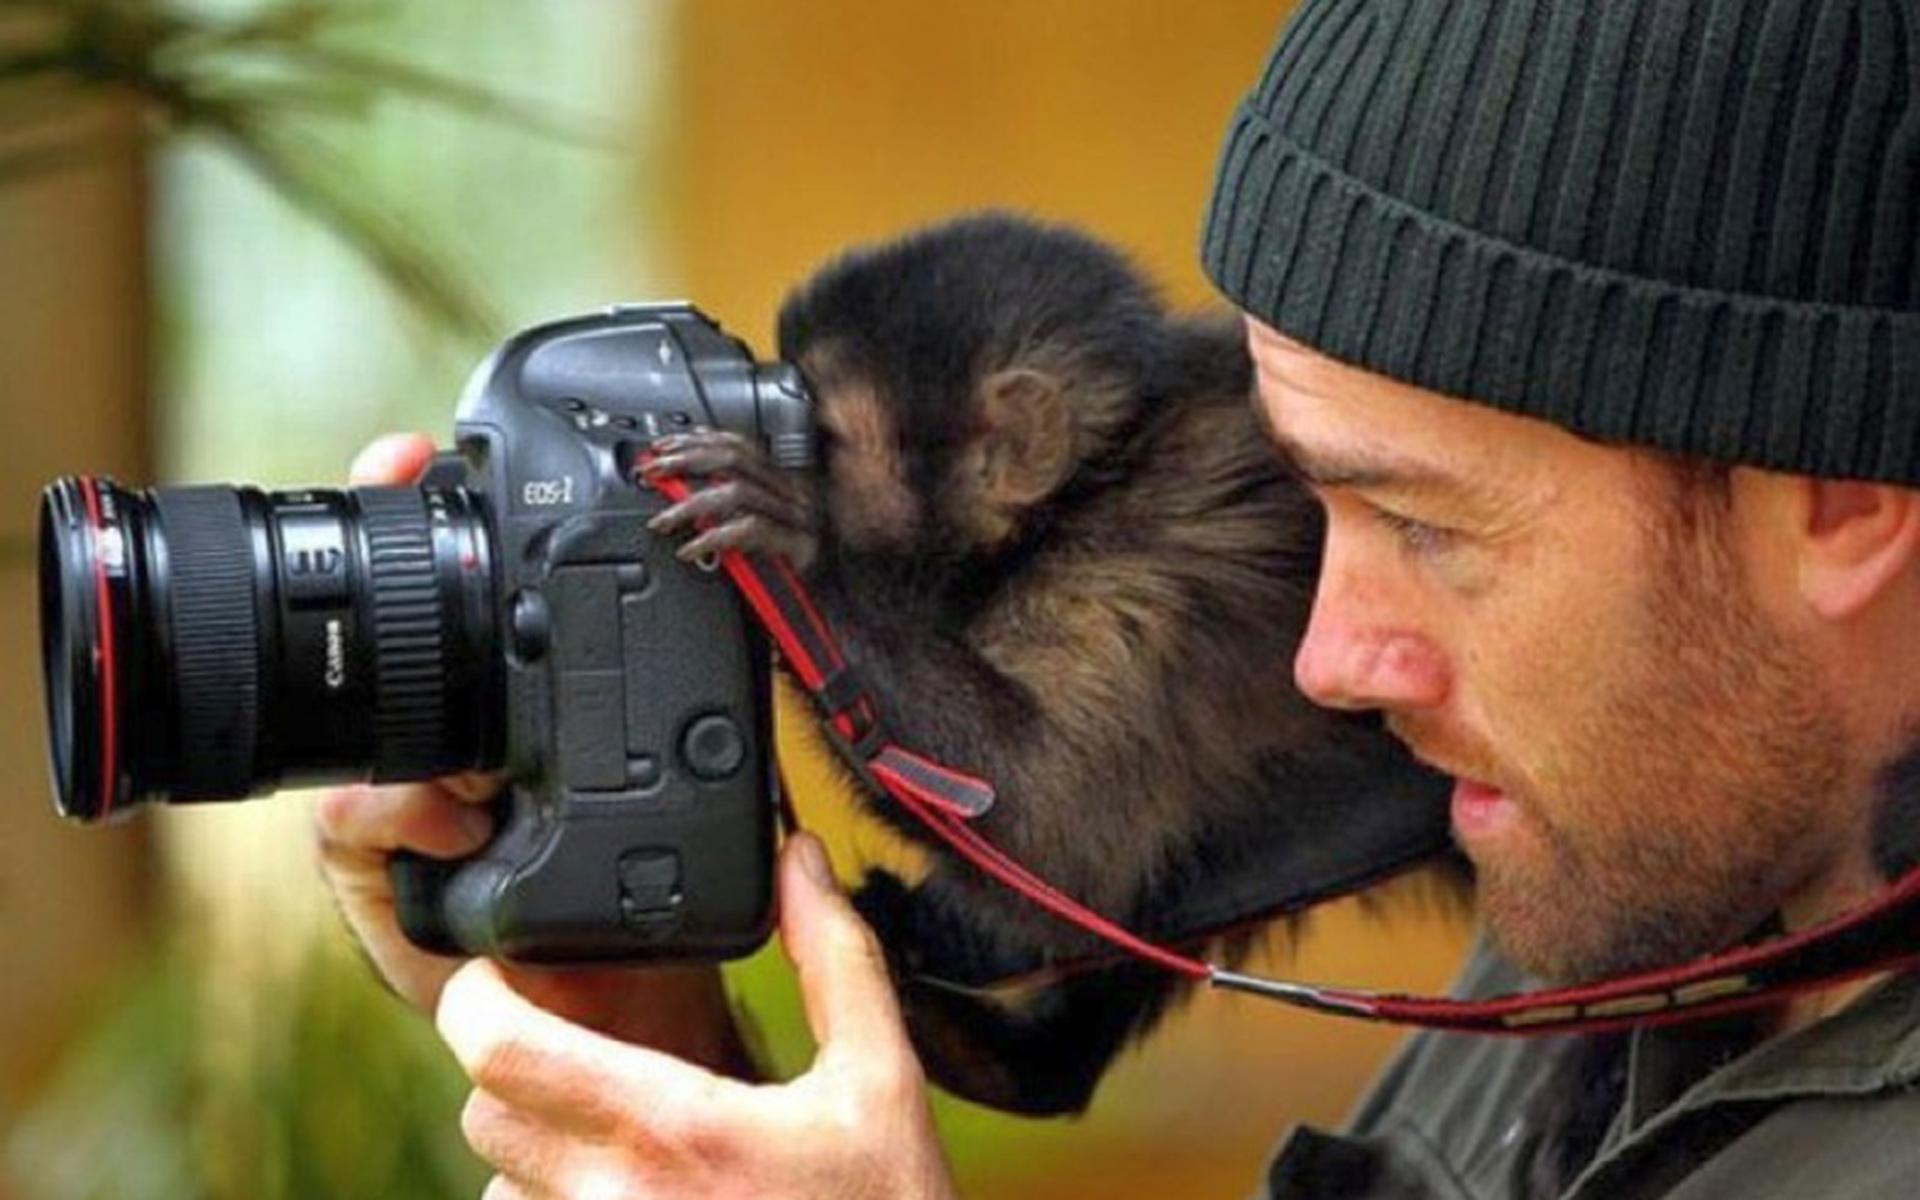 Interesting photo. Съемка животных. Человек фотографирует животных. Фотограф и животные. Животные с фотокамерой.